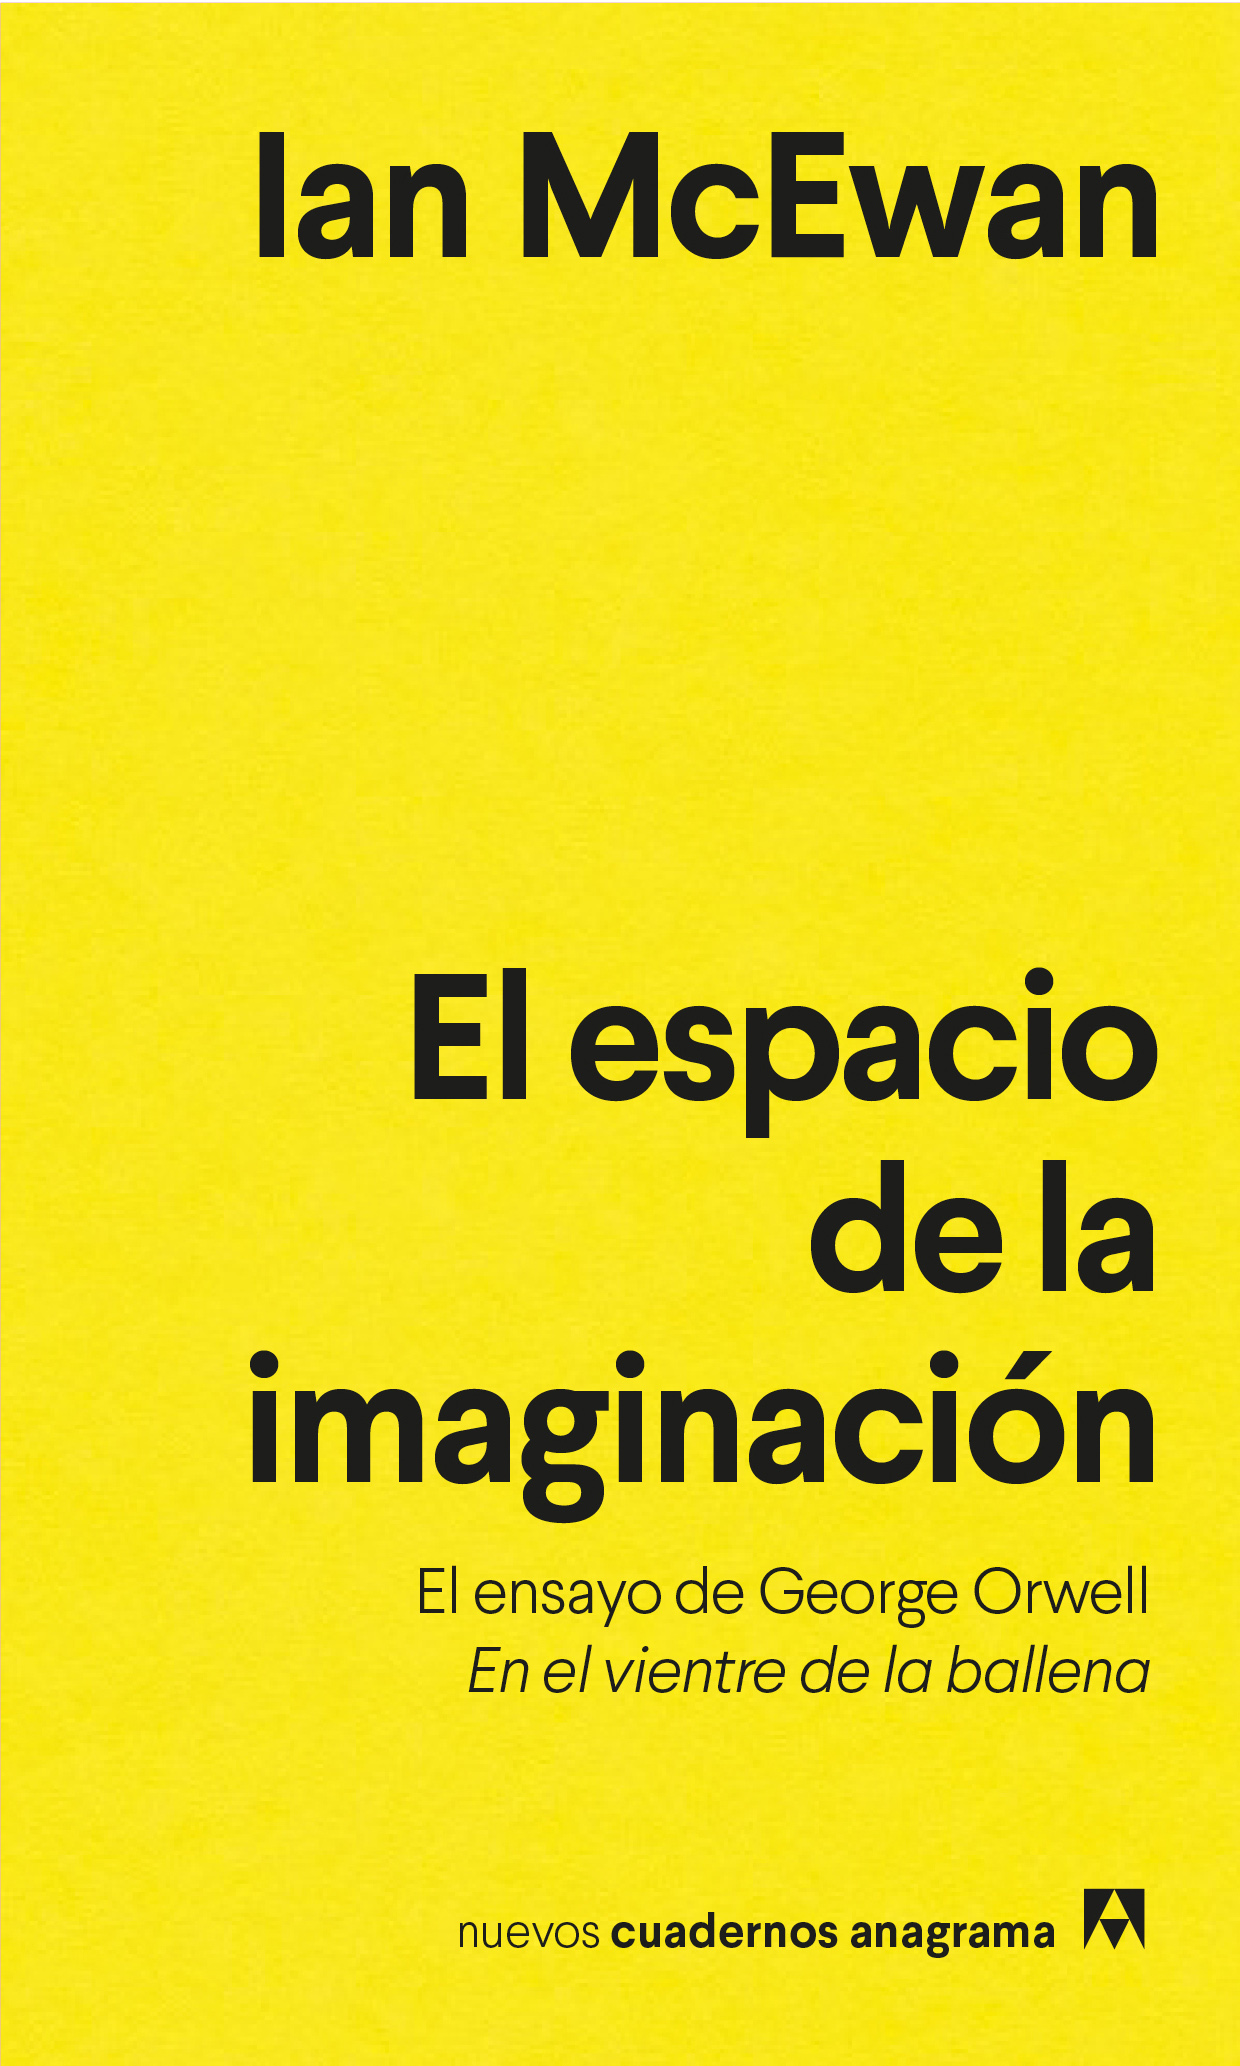 El espacio de la imaginación - McEwan, Ian - 978-84-339-1663-1 - Editorial Anagrama